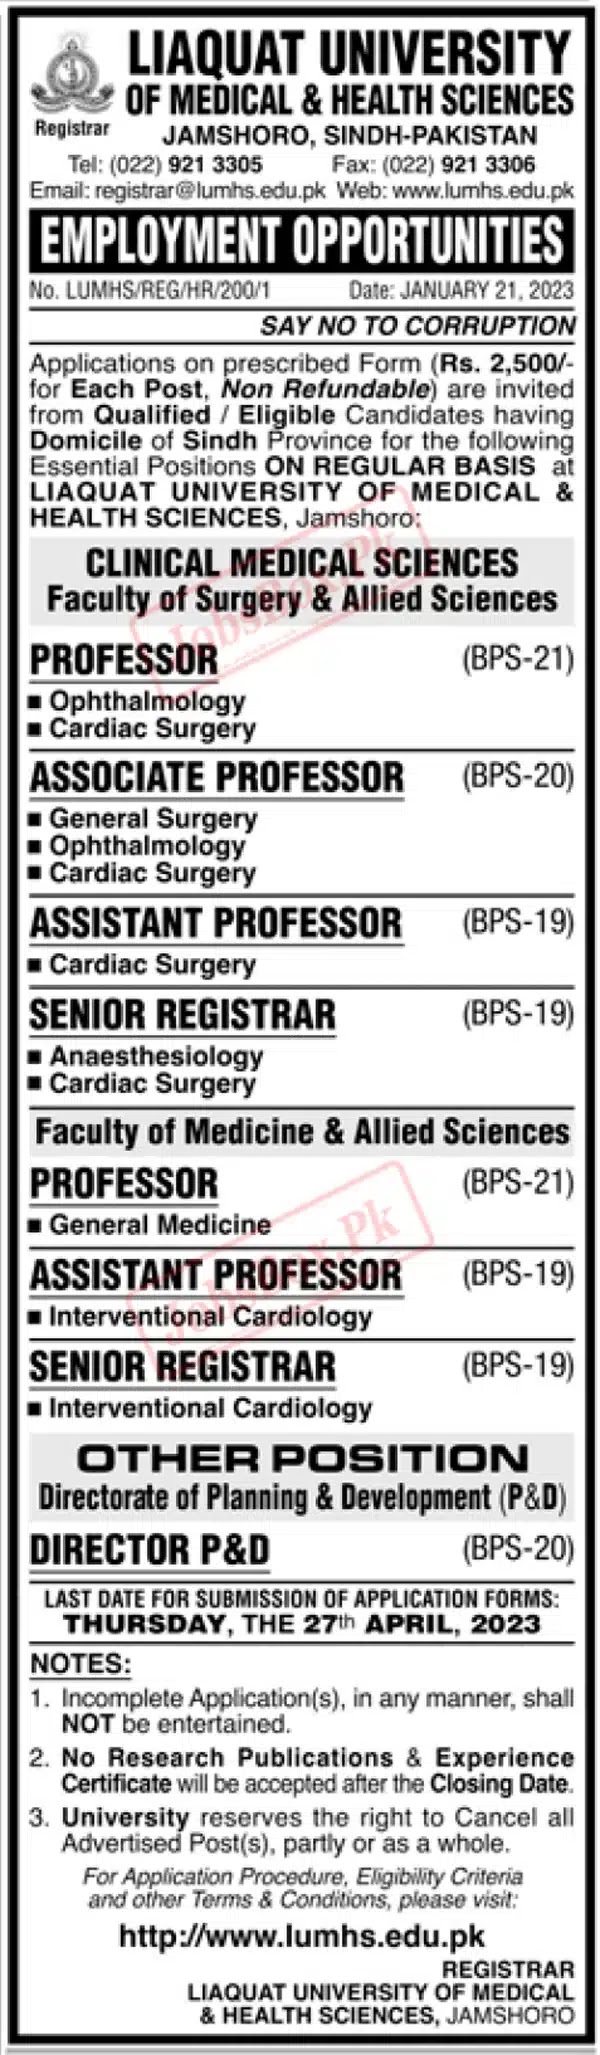 Liaquat University Jobs 2023 - LUMHS Jobs 2023 - www.lumhs.edu.pk 2023